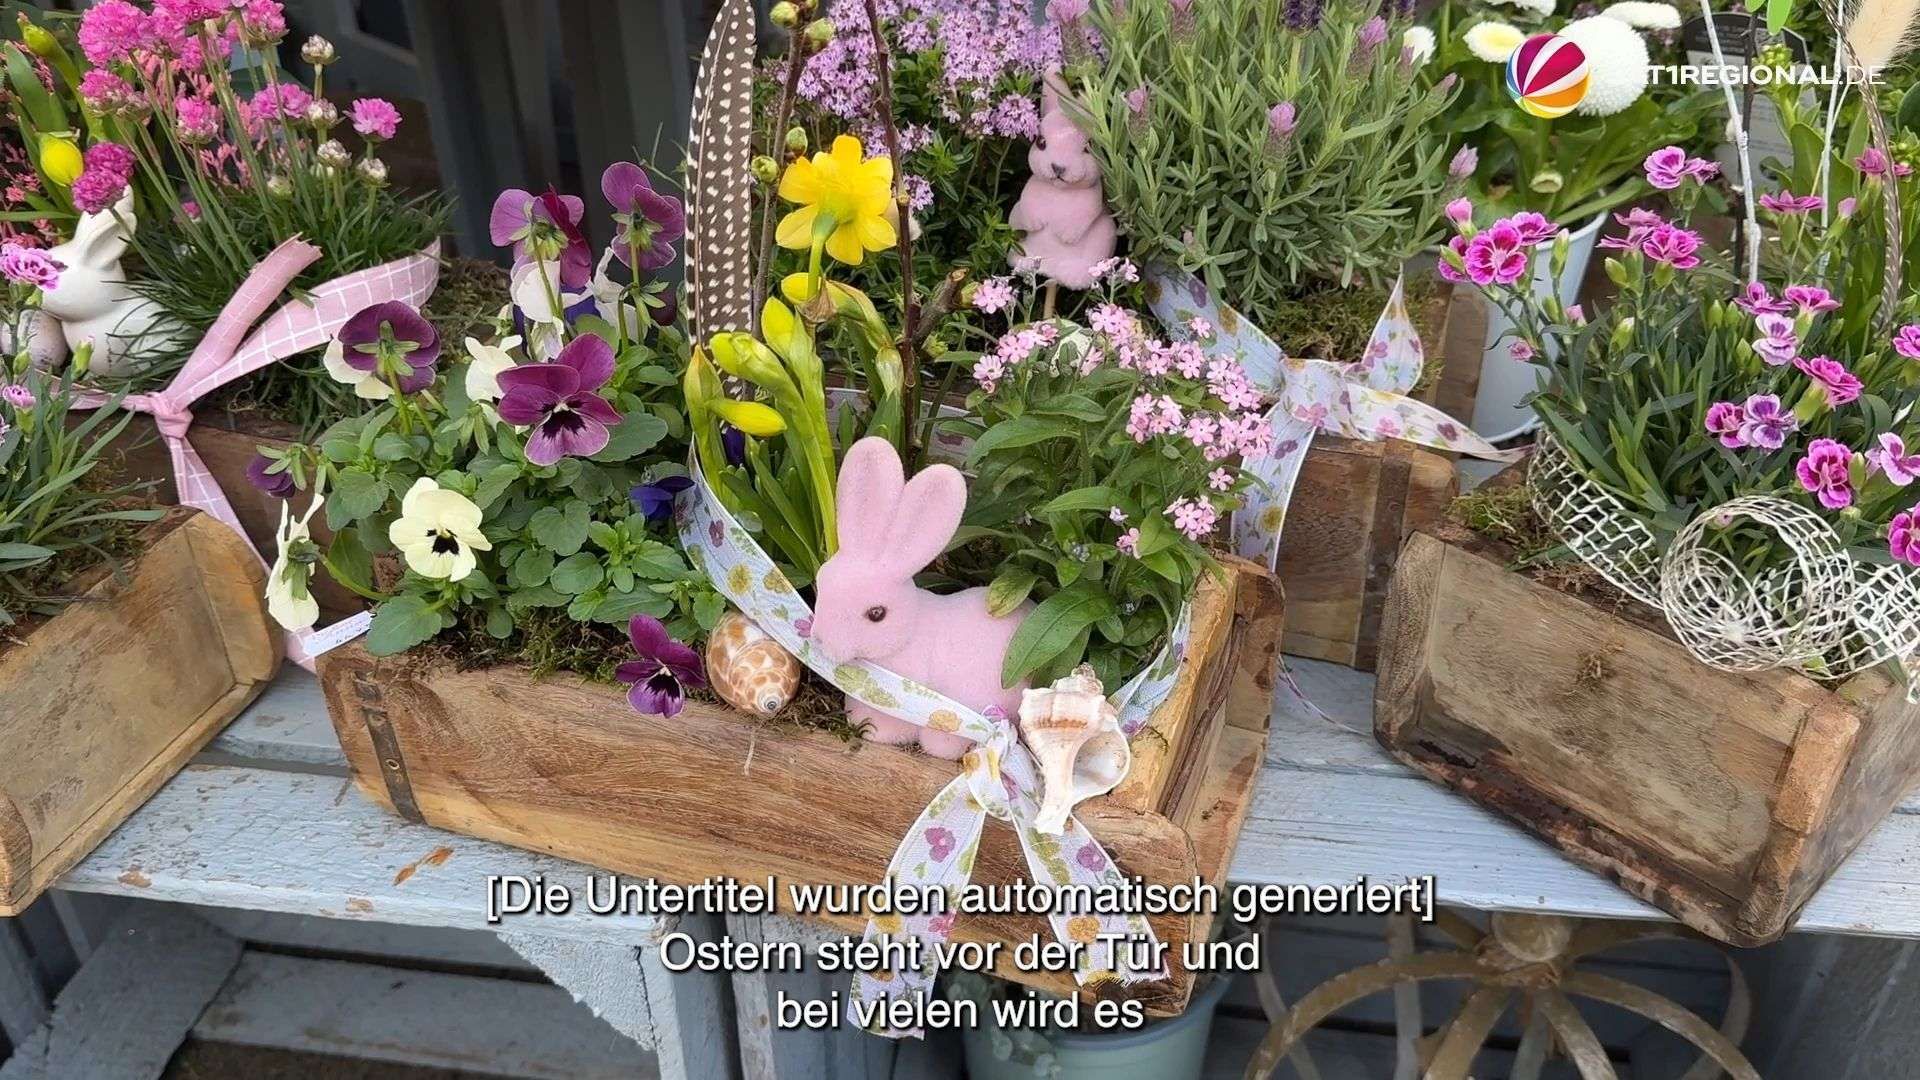 Hochbetrieb kurz vor Ostern in Blumenladen in Hannover